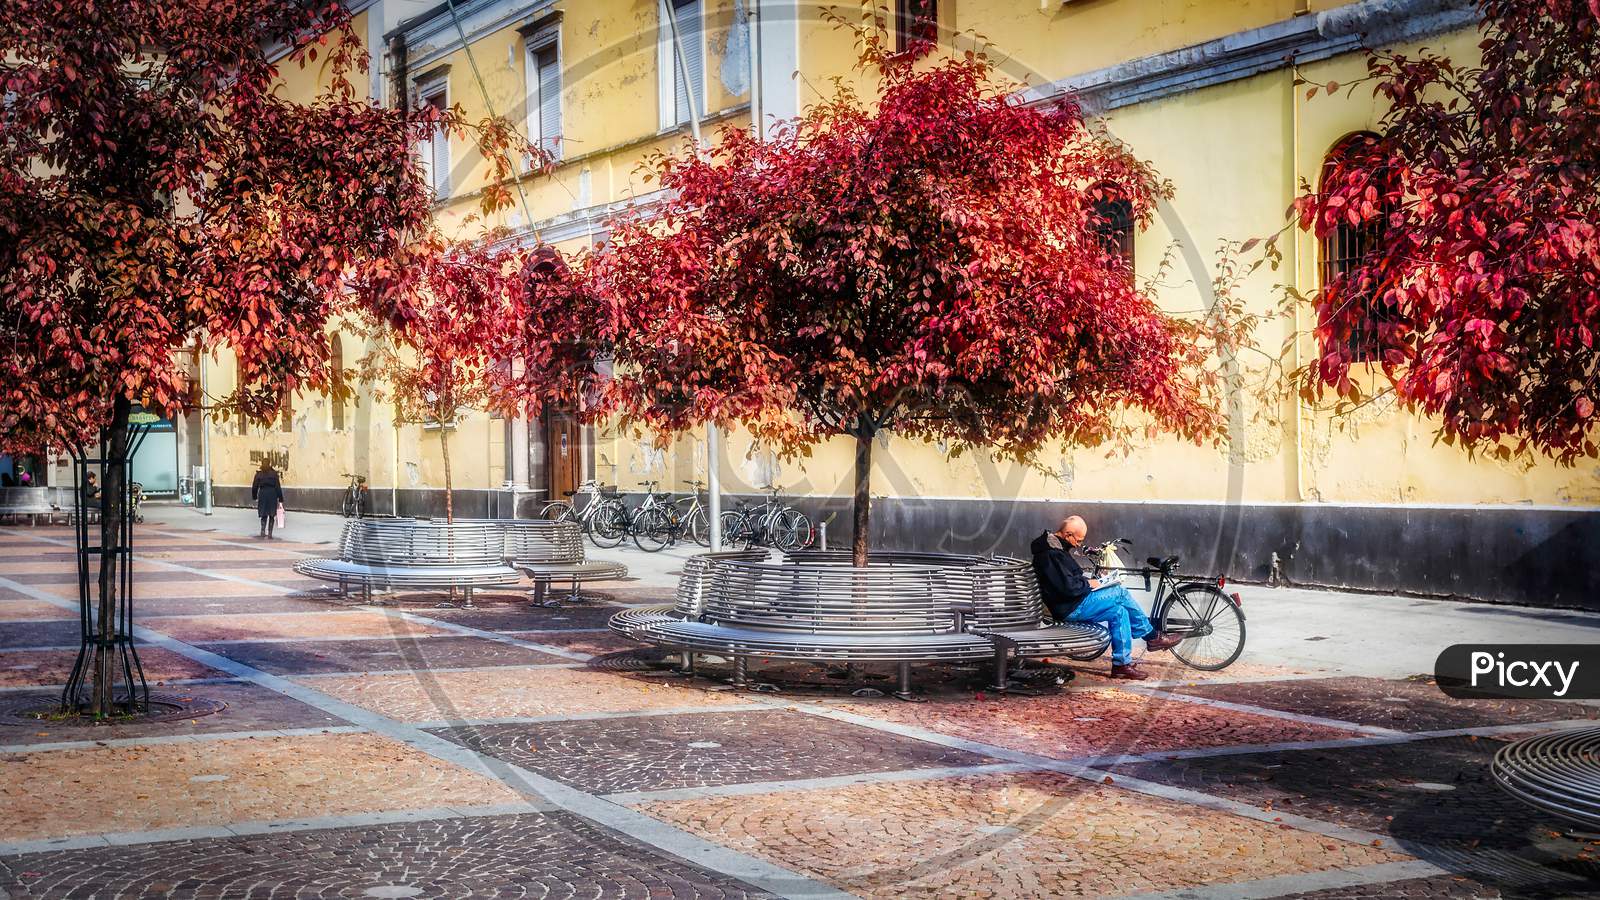 Man Reading In A Street In Monza